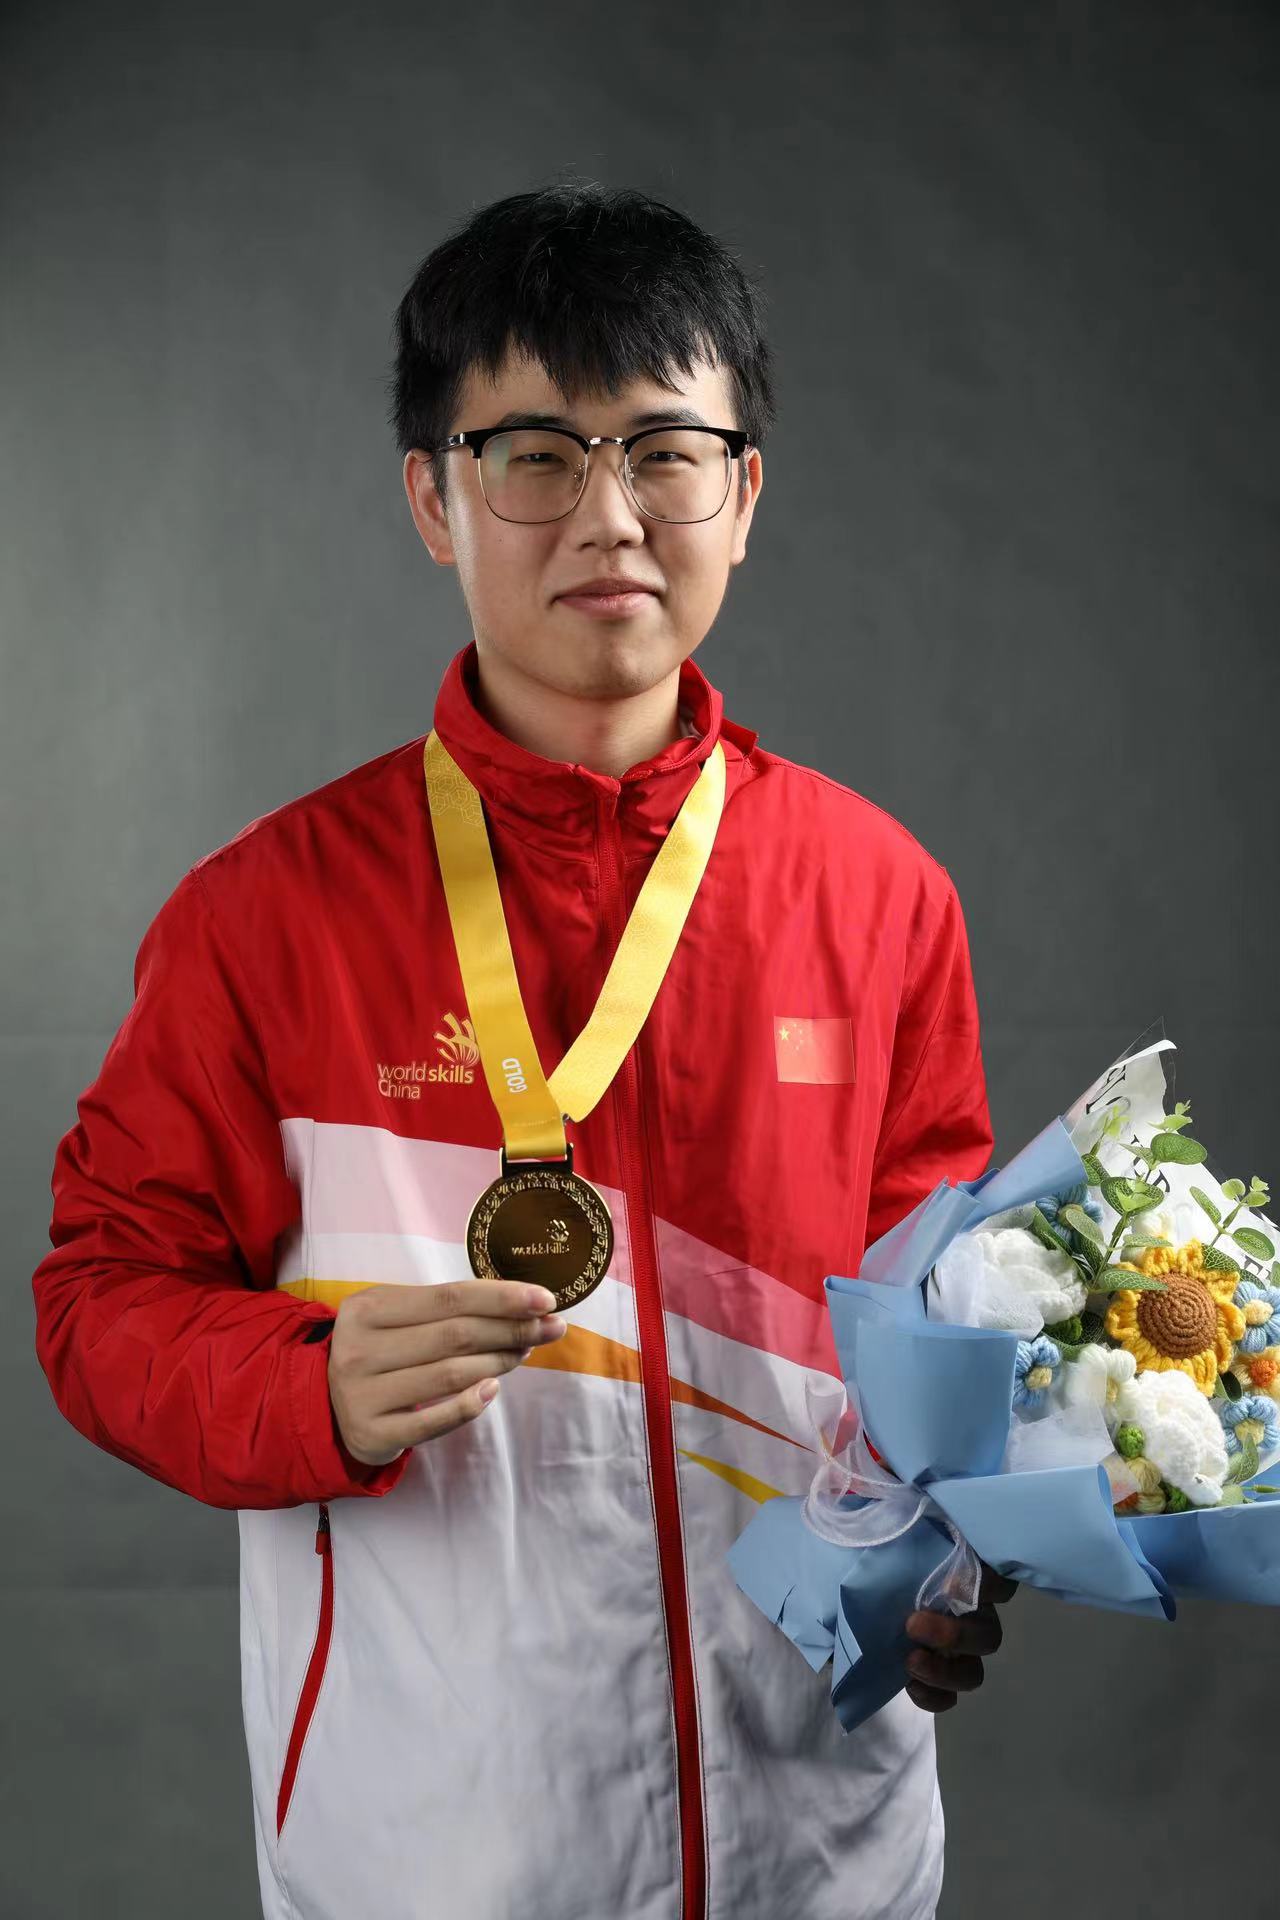 陈新源获得世界技能大赛云计算项目金牌